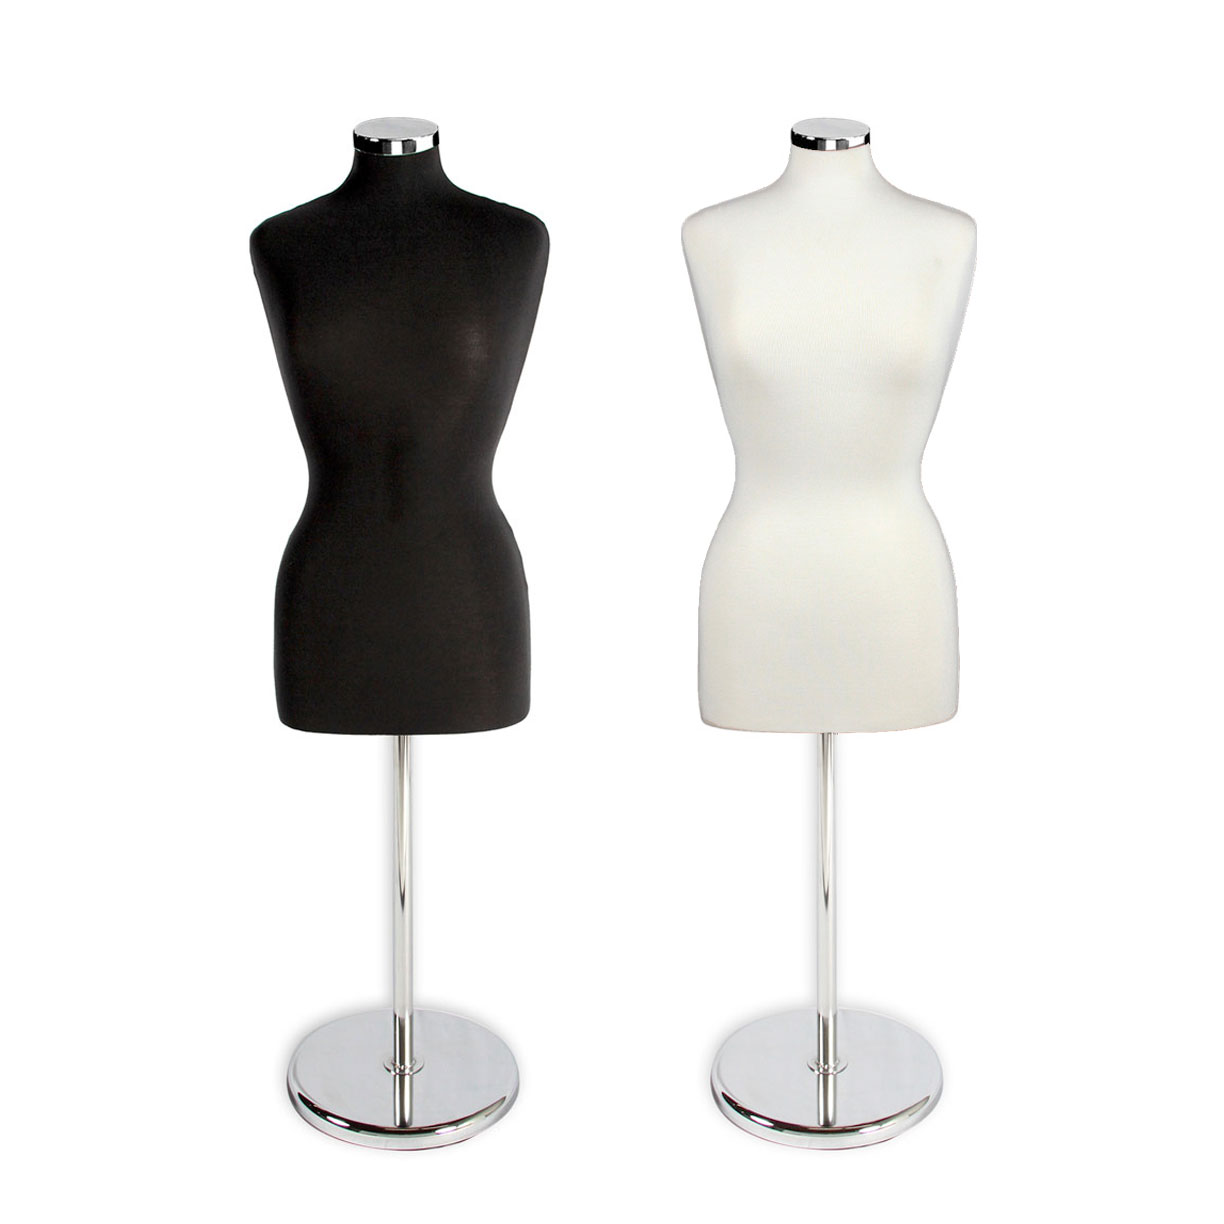 2022 Colour Female Mannequin Torso Dress Form Model Body